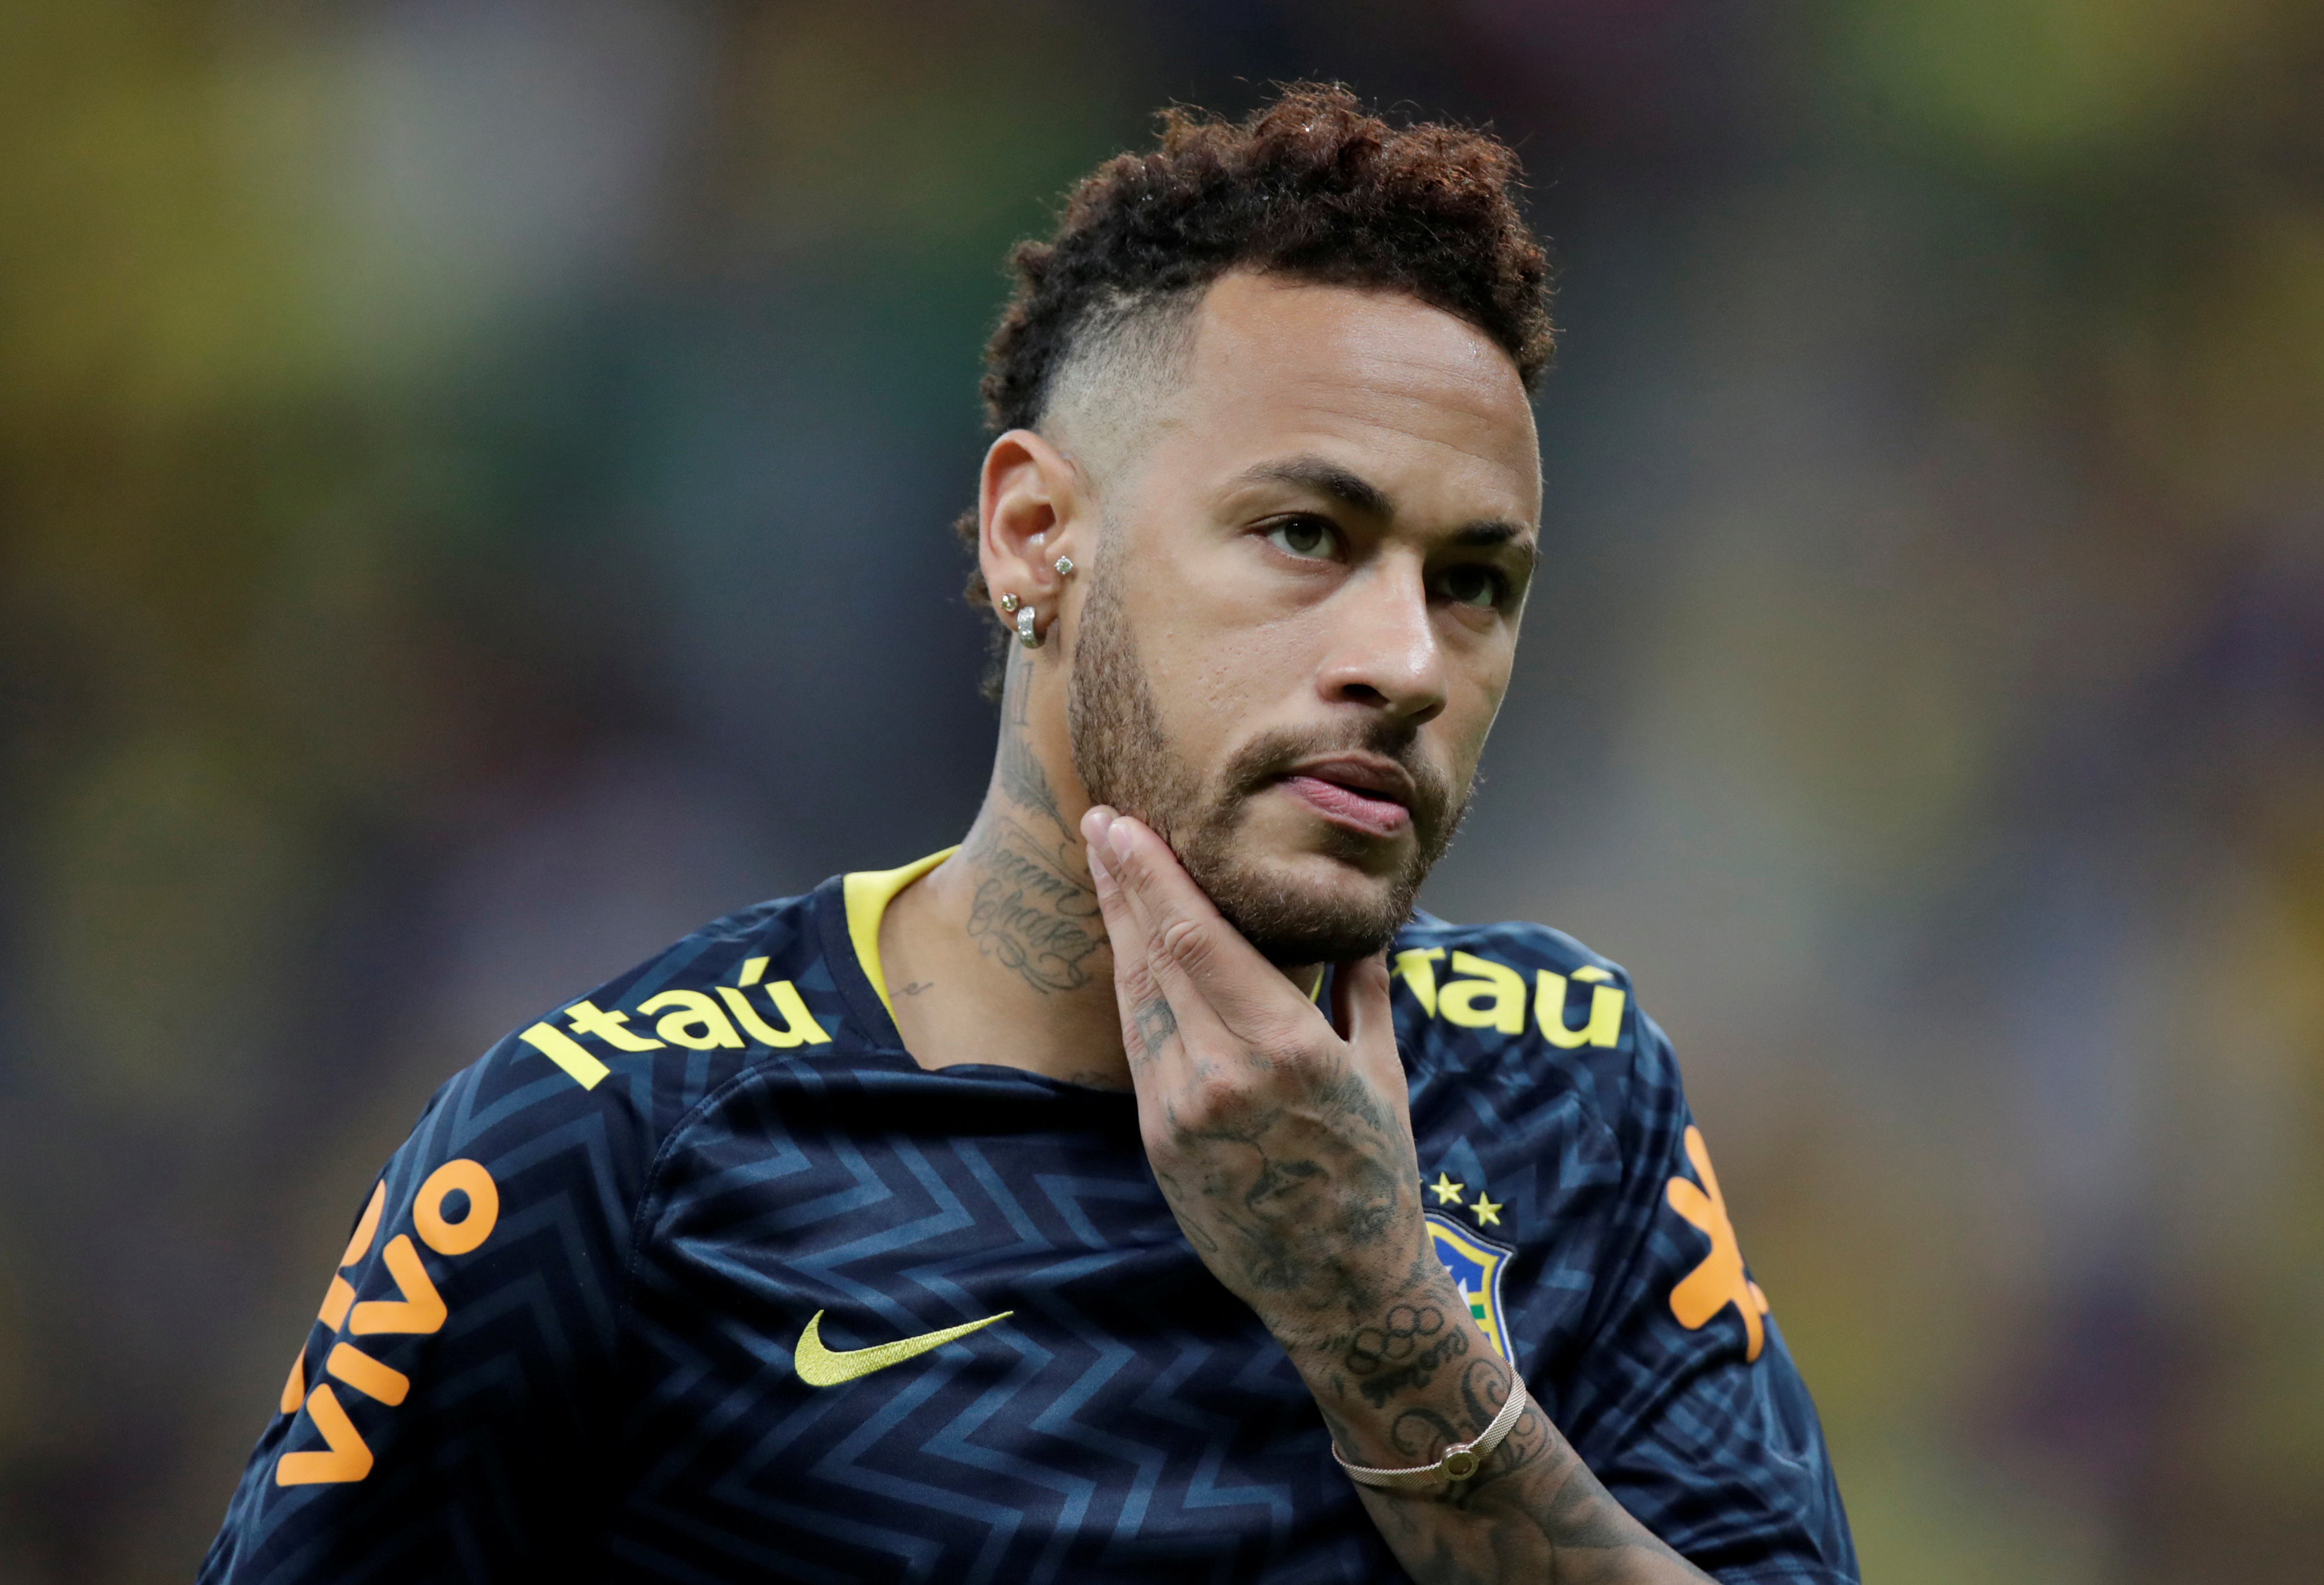 El DINERAL que pedirá el PSG por Neymar que podría ahuyentar al Barça… y al Madrid